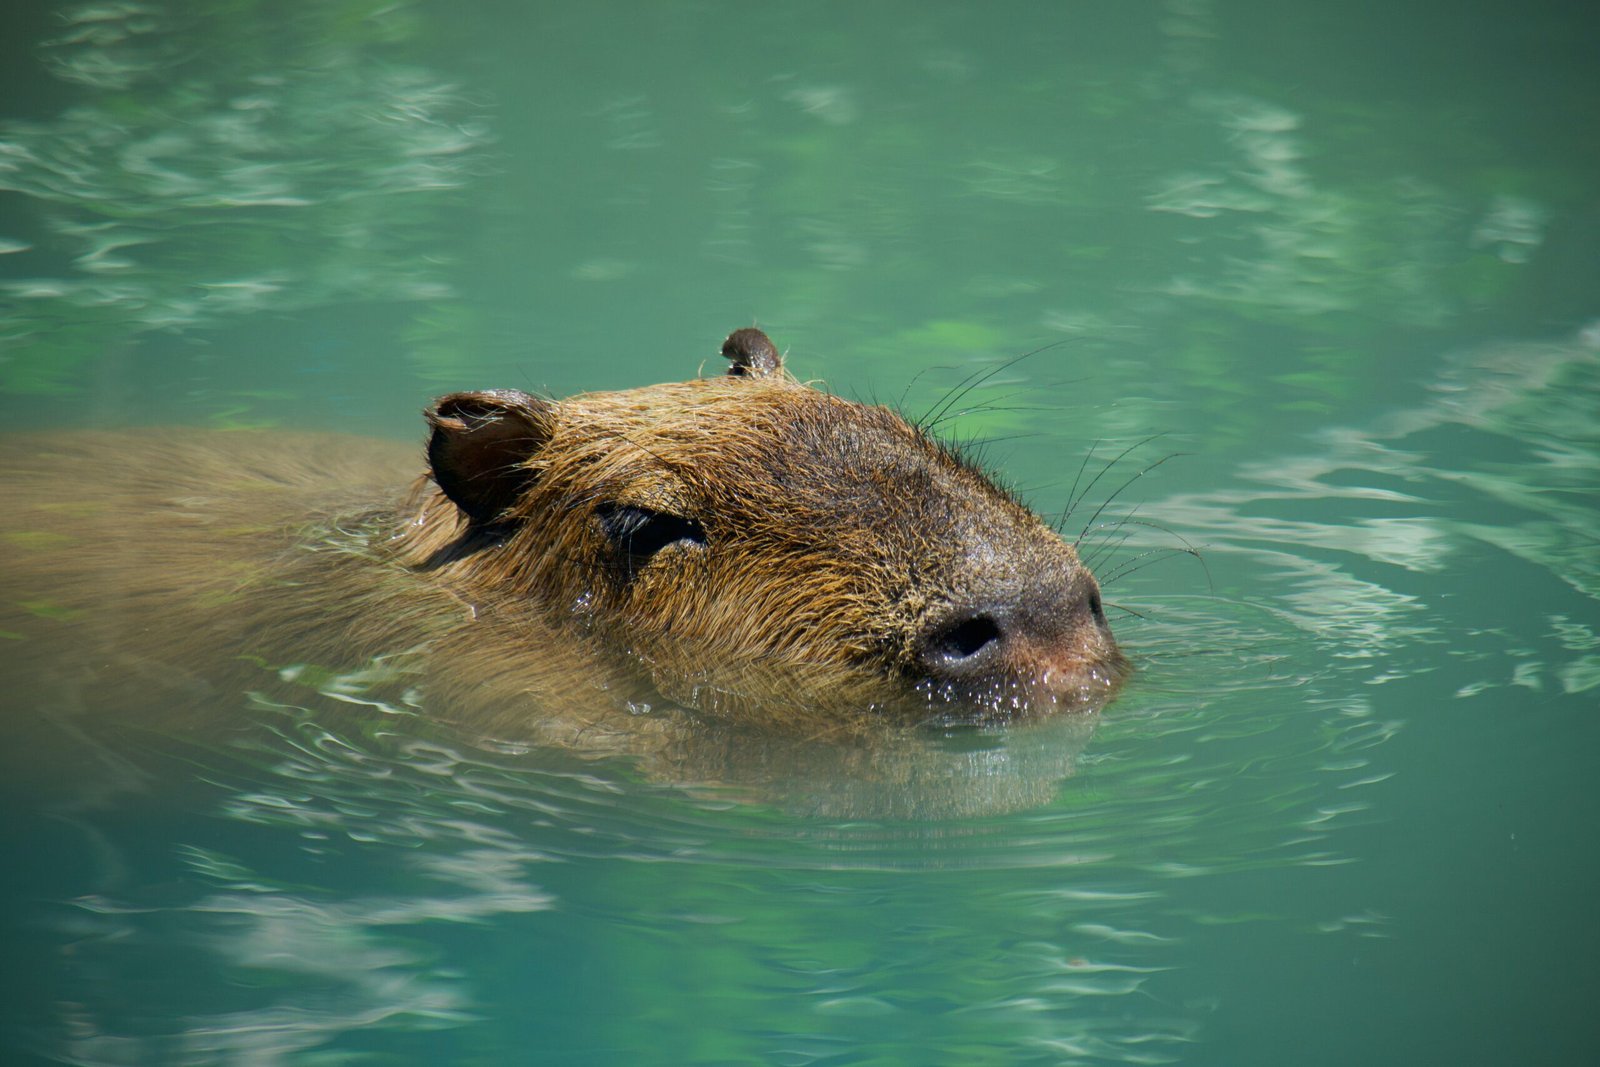 Where to Buy a Capybara